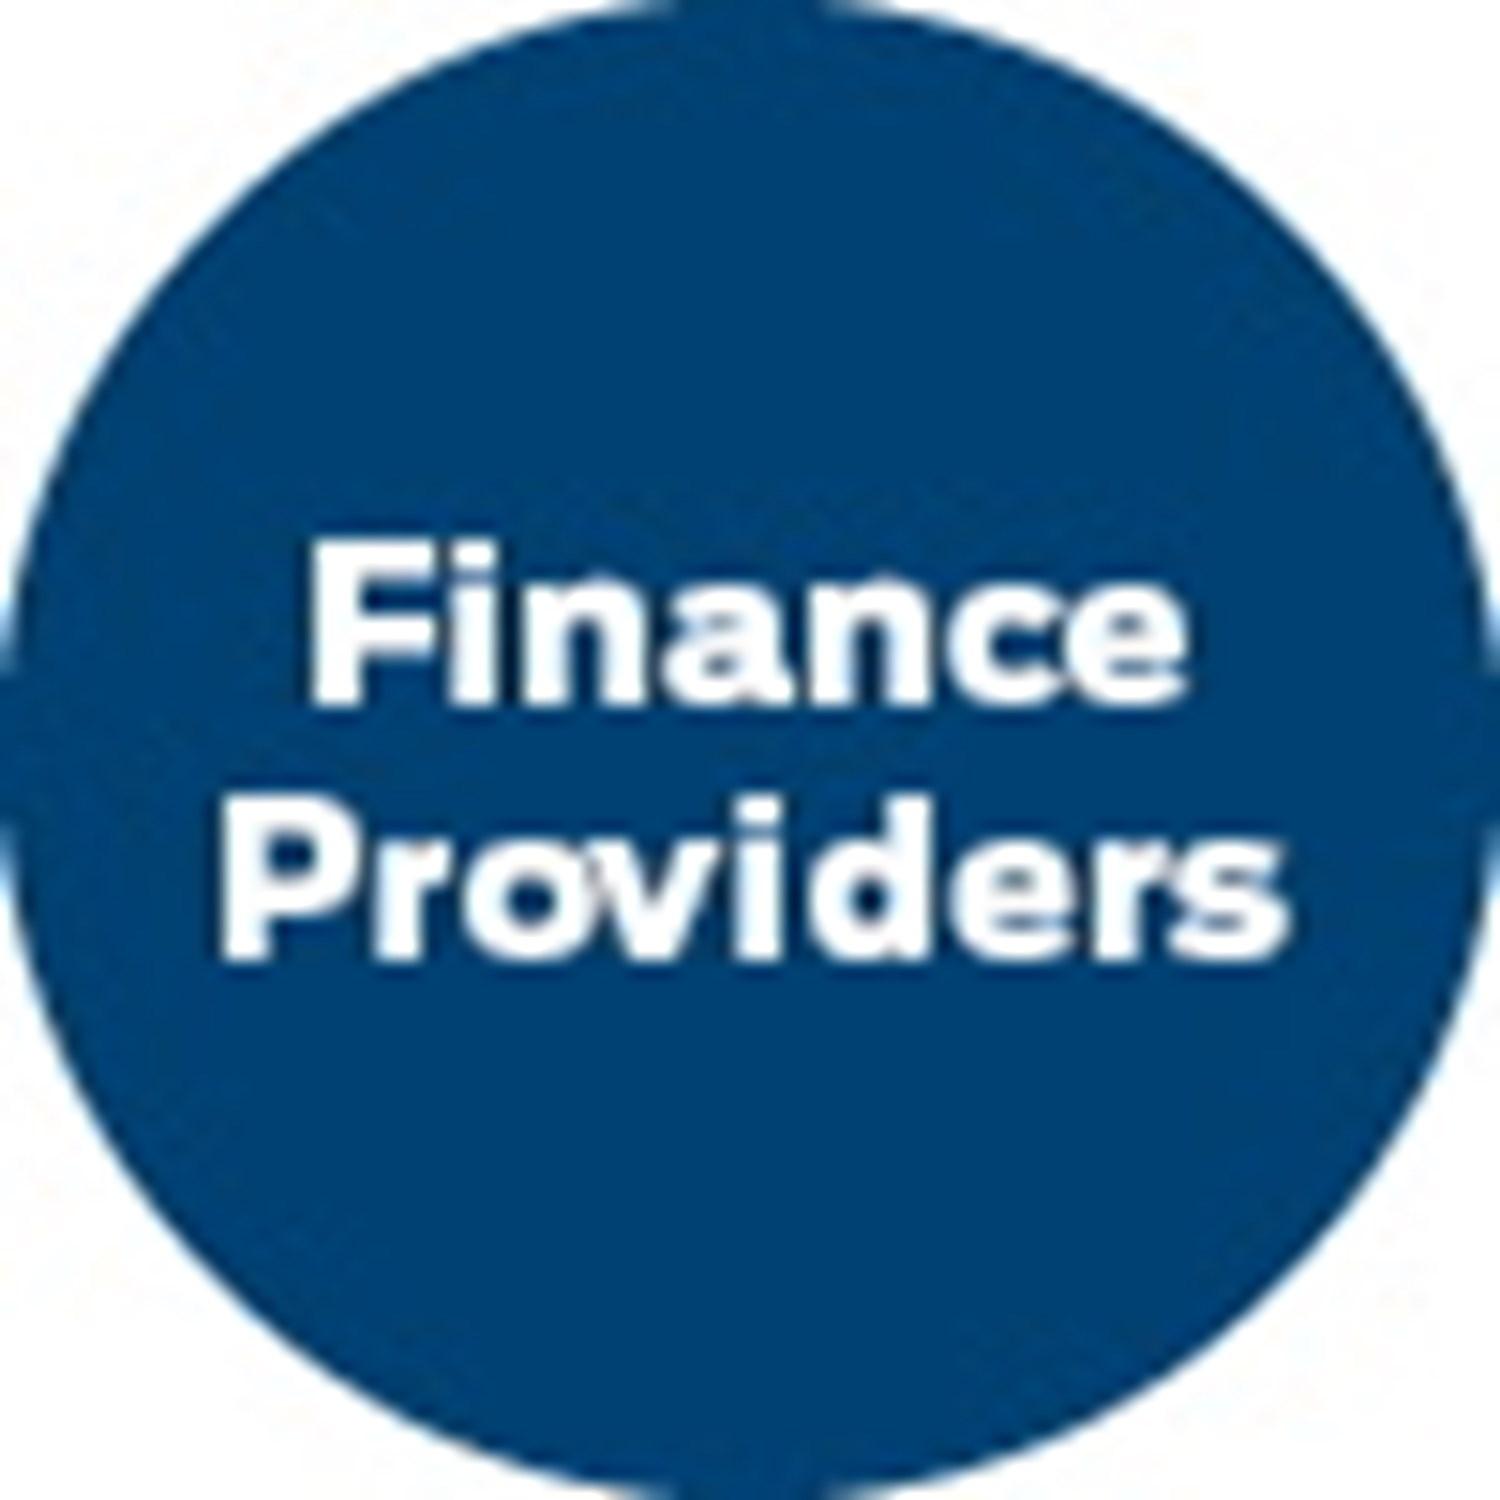 Finance providers icon